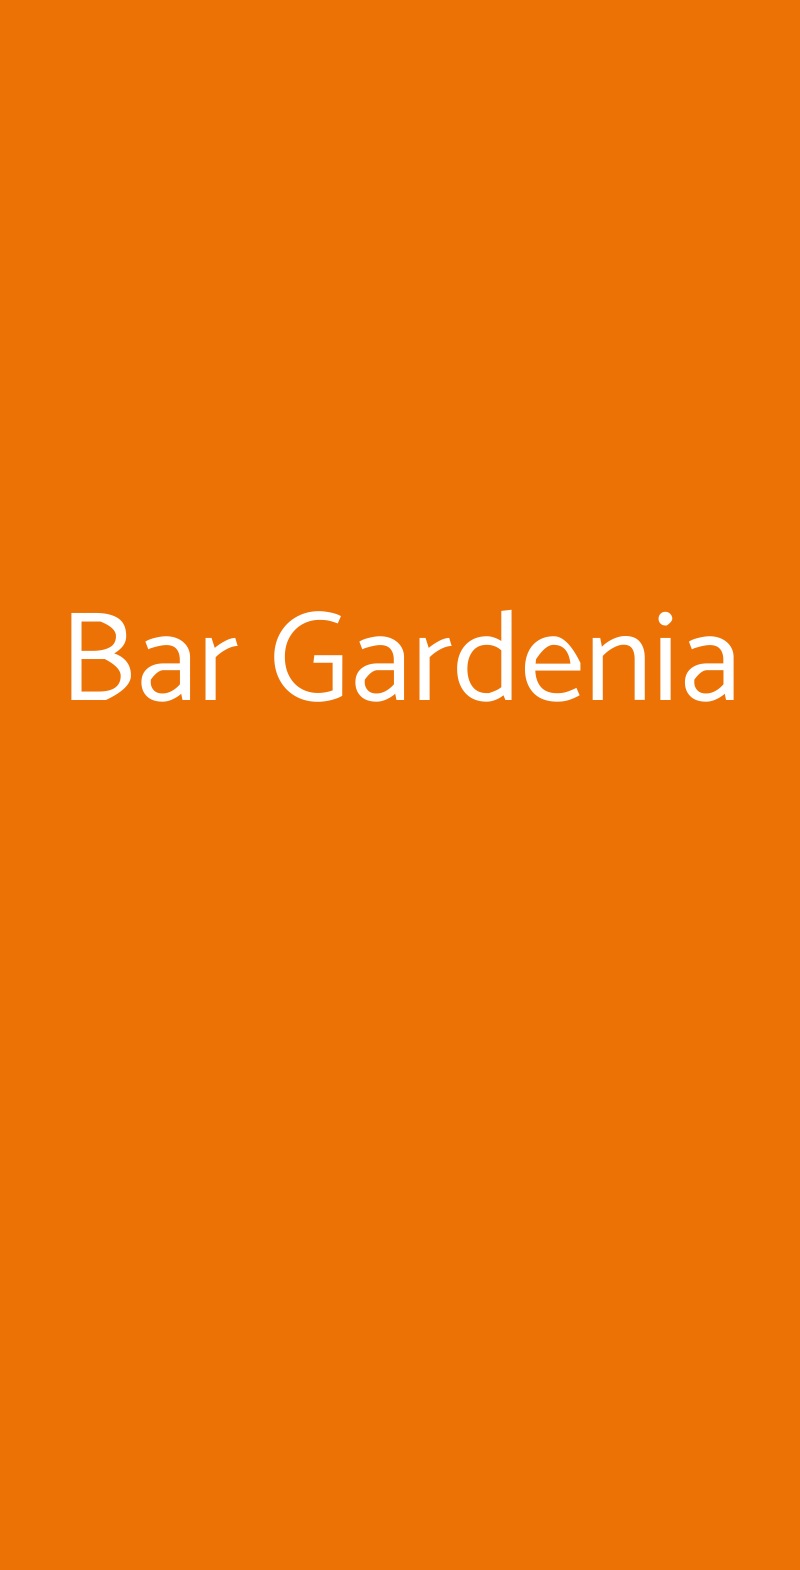 Bar Gardenia Bologna menù 1 pagina